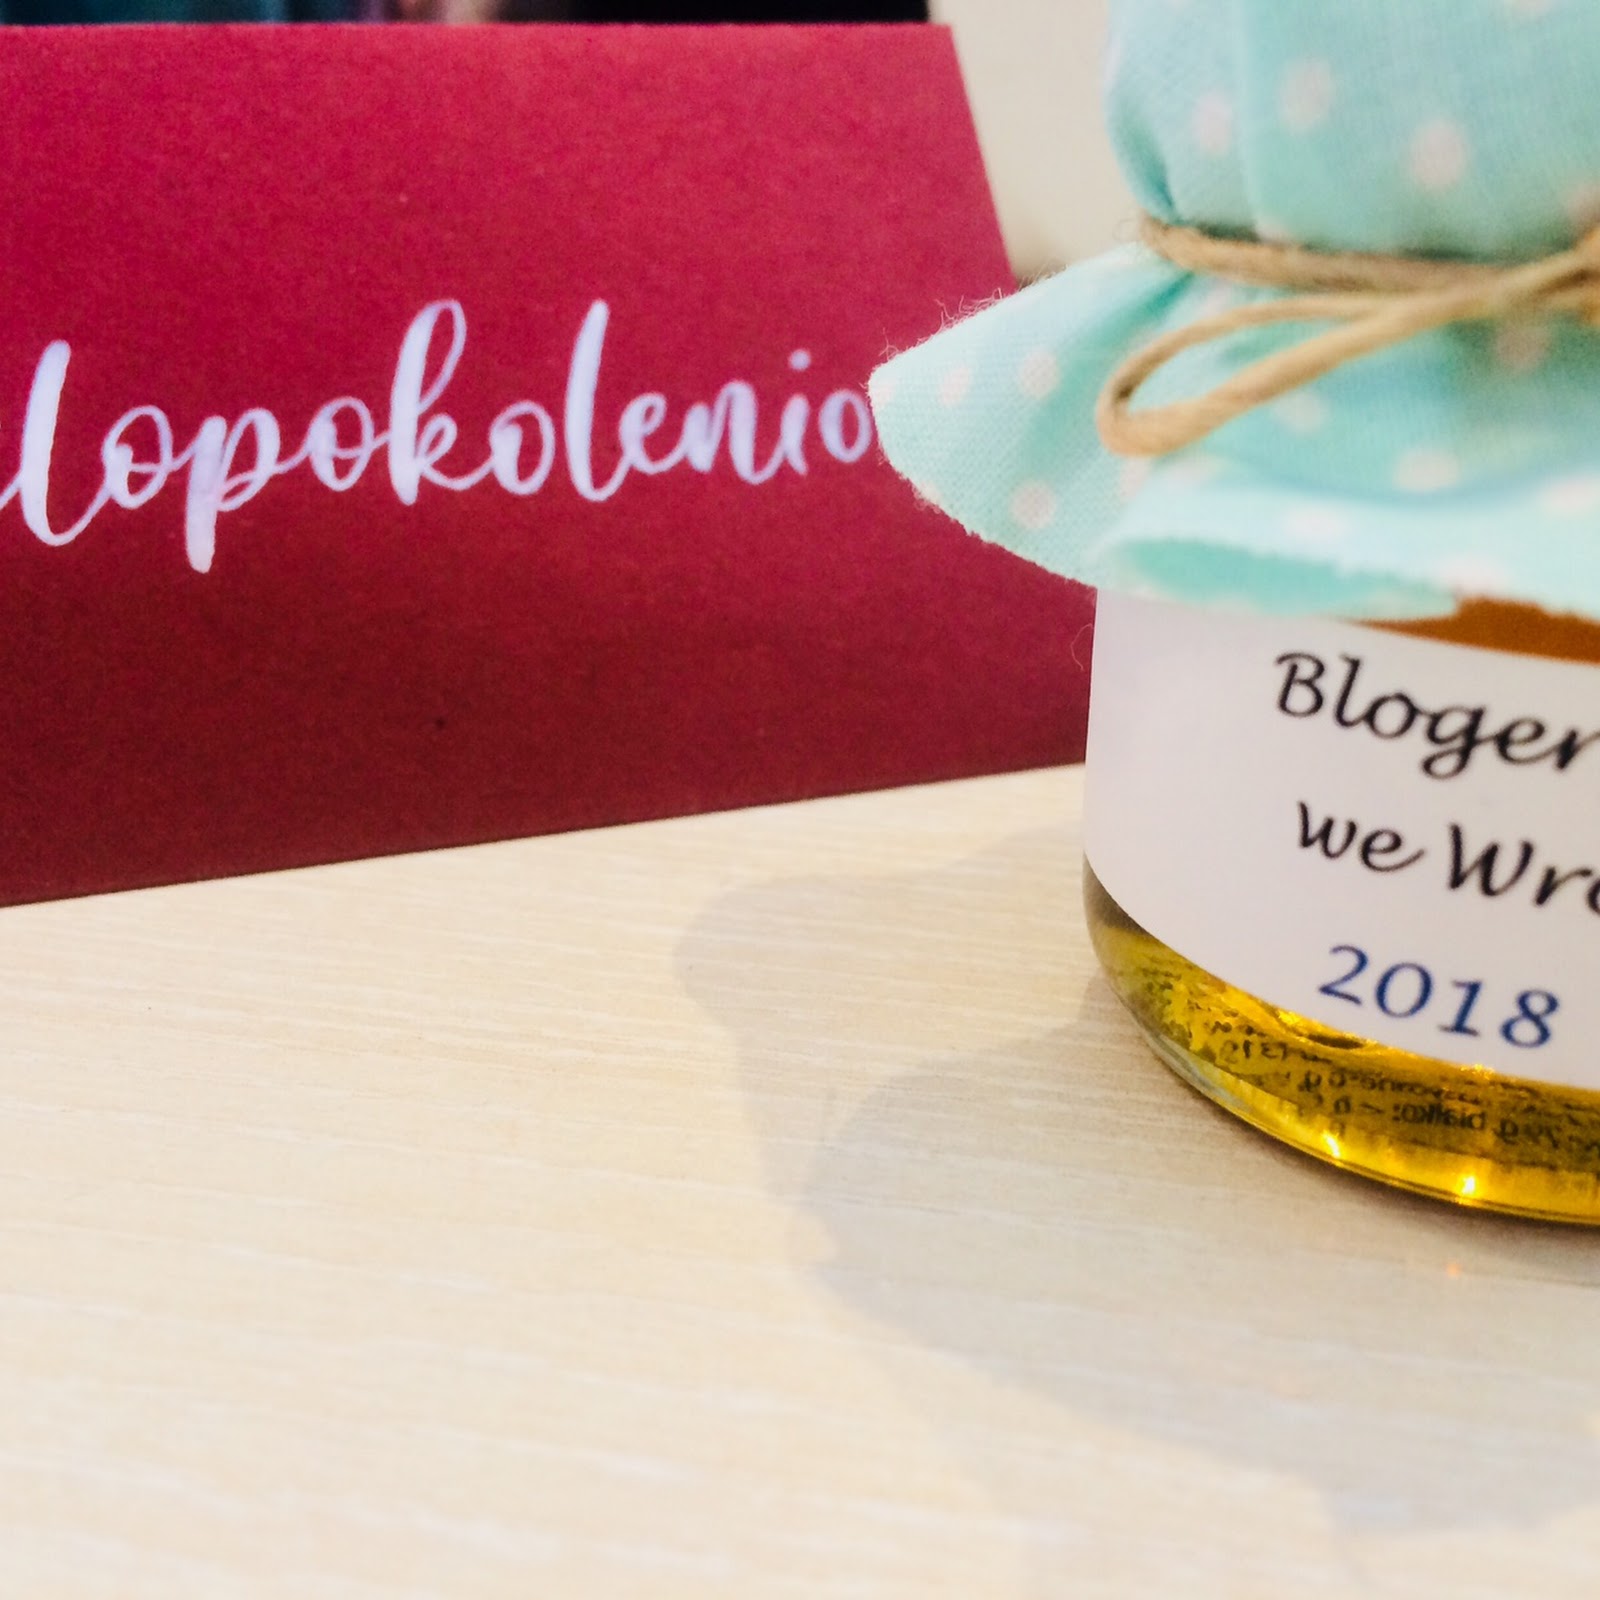 Blogerzy we Wro 2018 - czyli spotkanie nie tylko blogujących mam